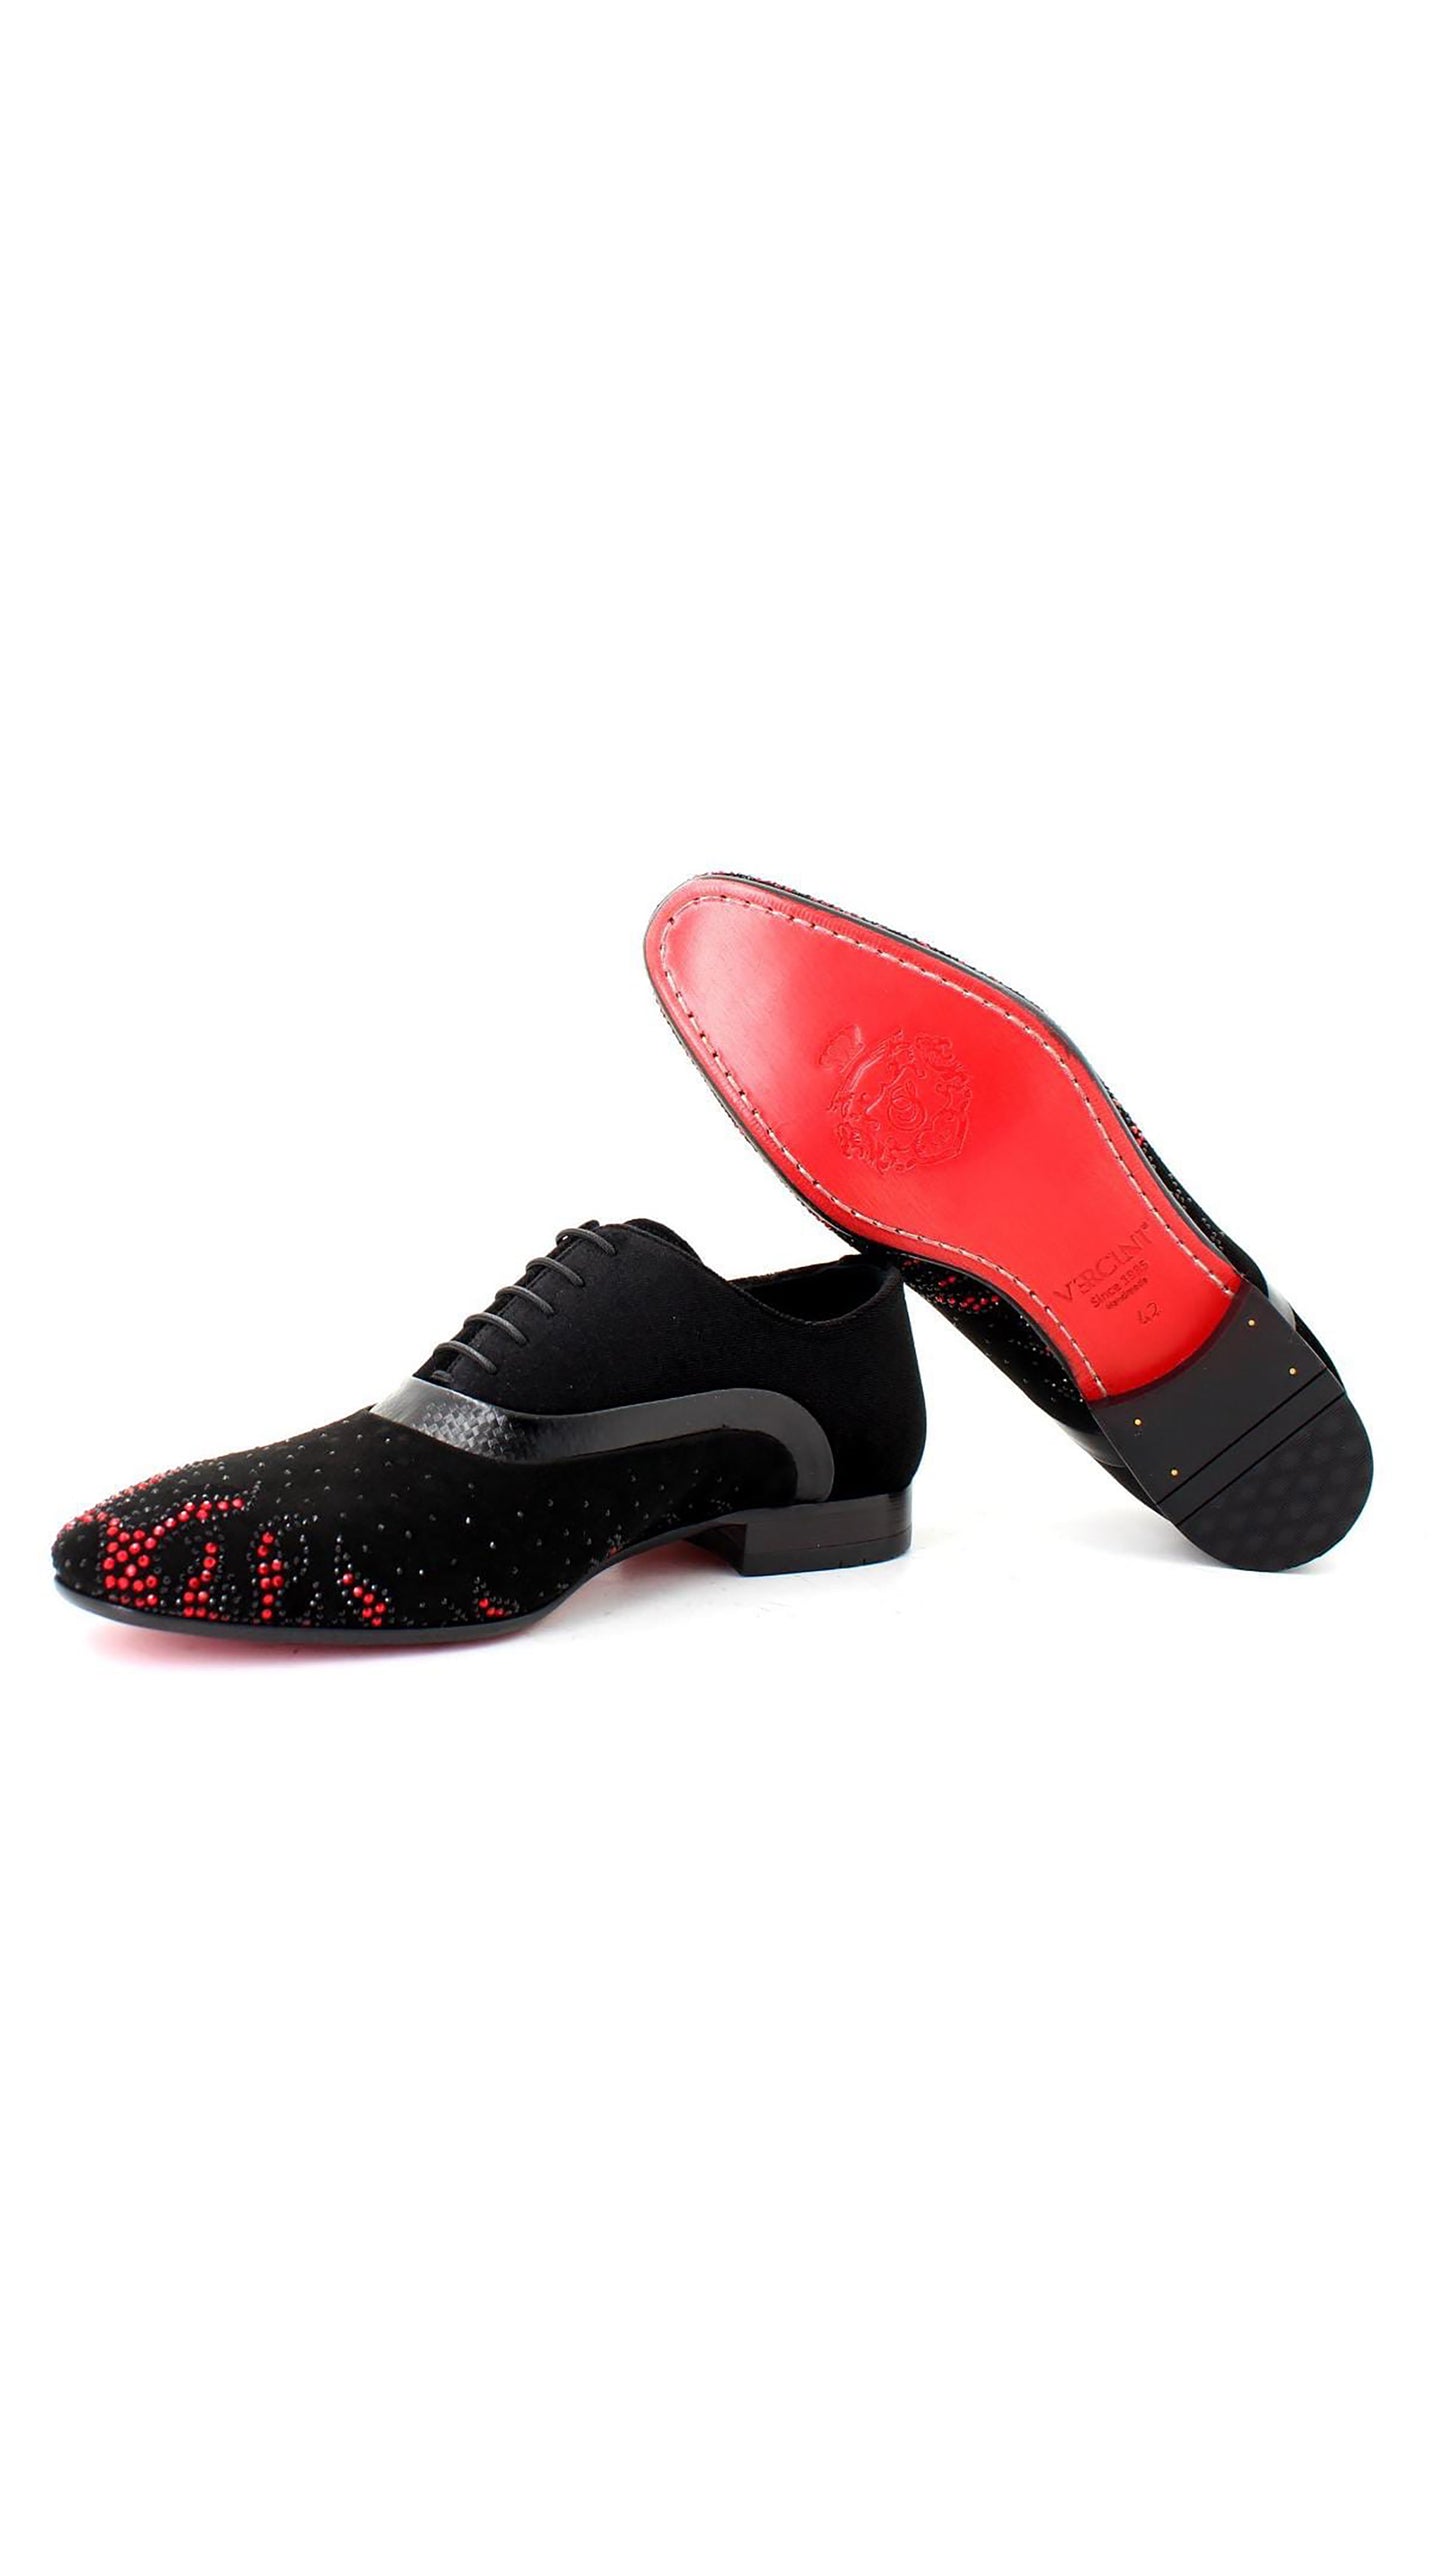 Vercini Cosmic Glint Oxfords Men's Designer Shoes